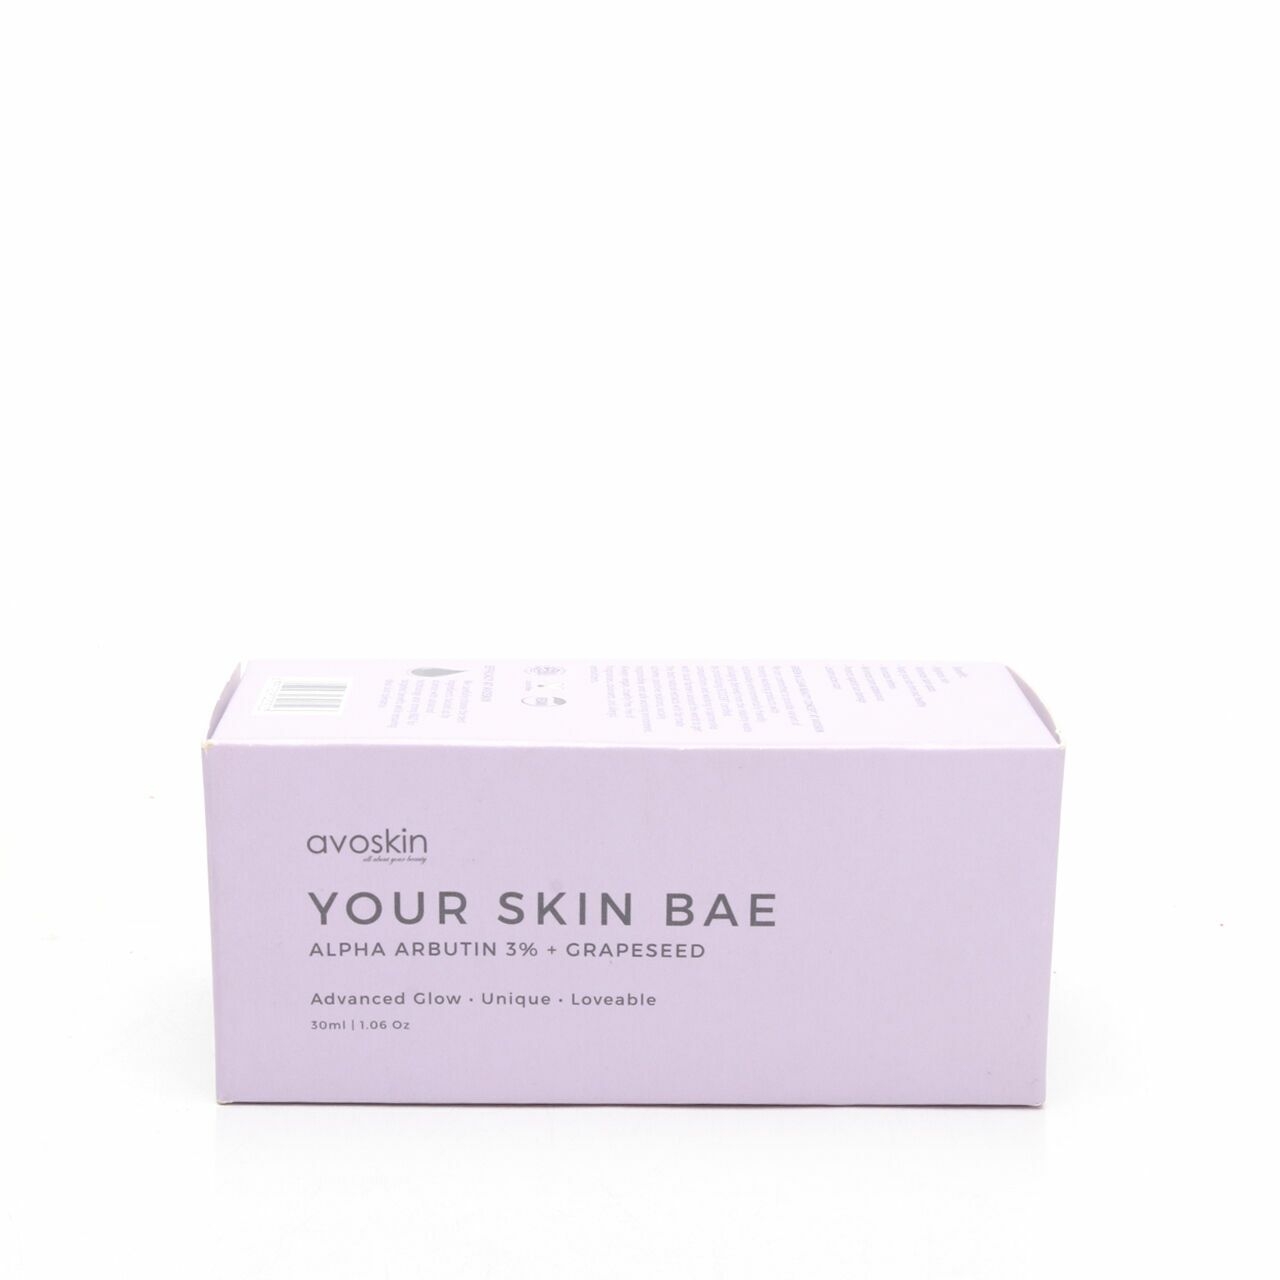 Avoskin Your Skin Bae Alpha Arbutin 3% + Grapessed Skin Care